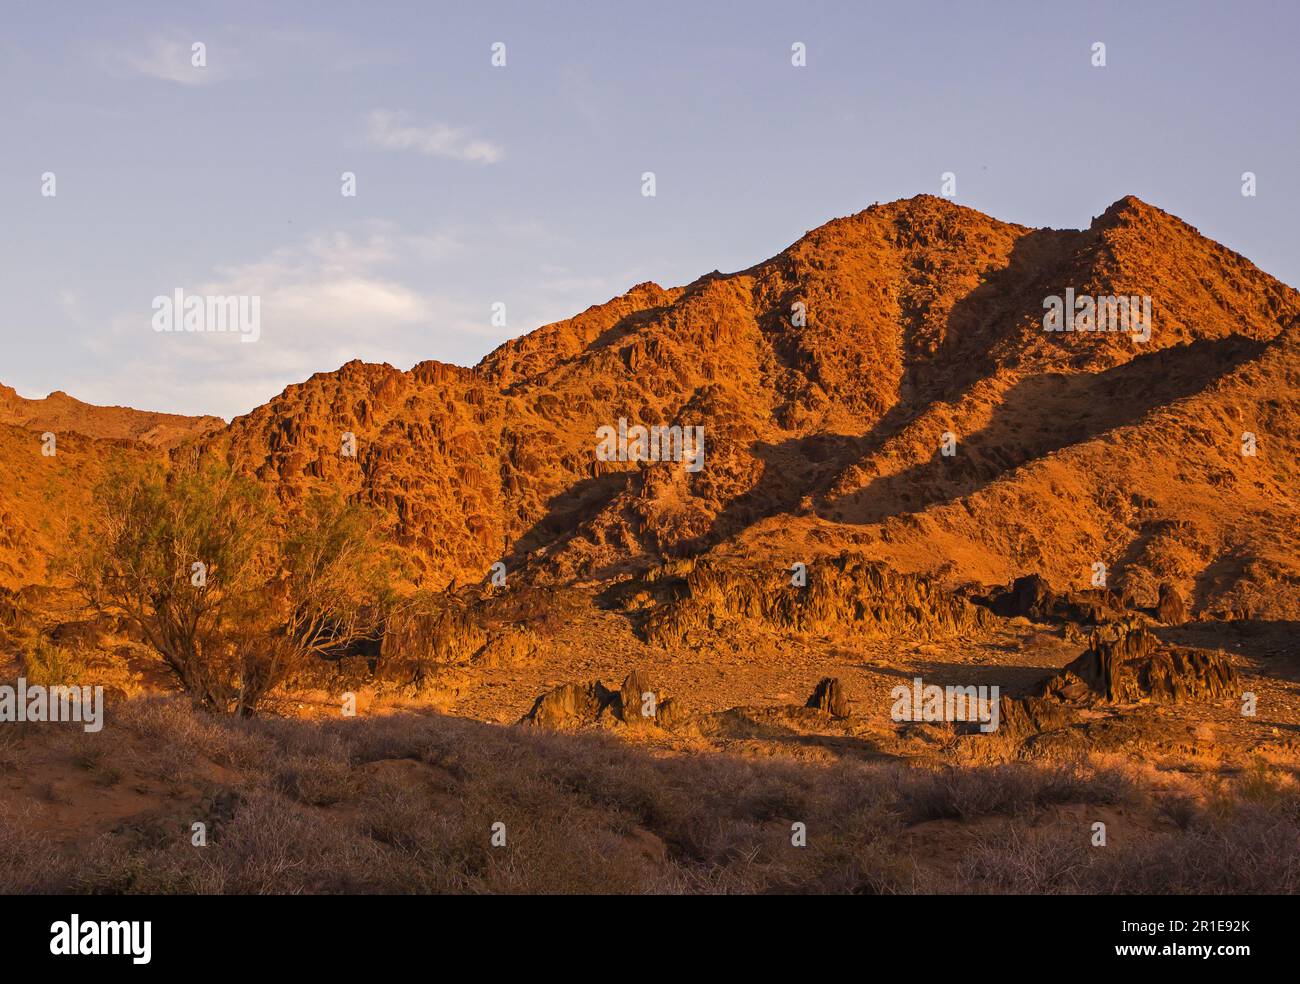 Le montagne rocciose scure del Richtersveld del Sudafrica, nella luce dorata del tardo pomeriggio Foto Stock